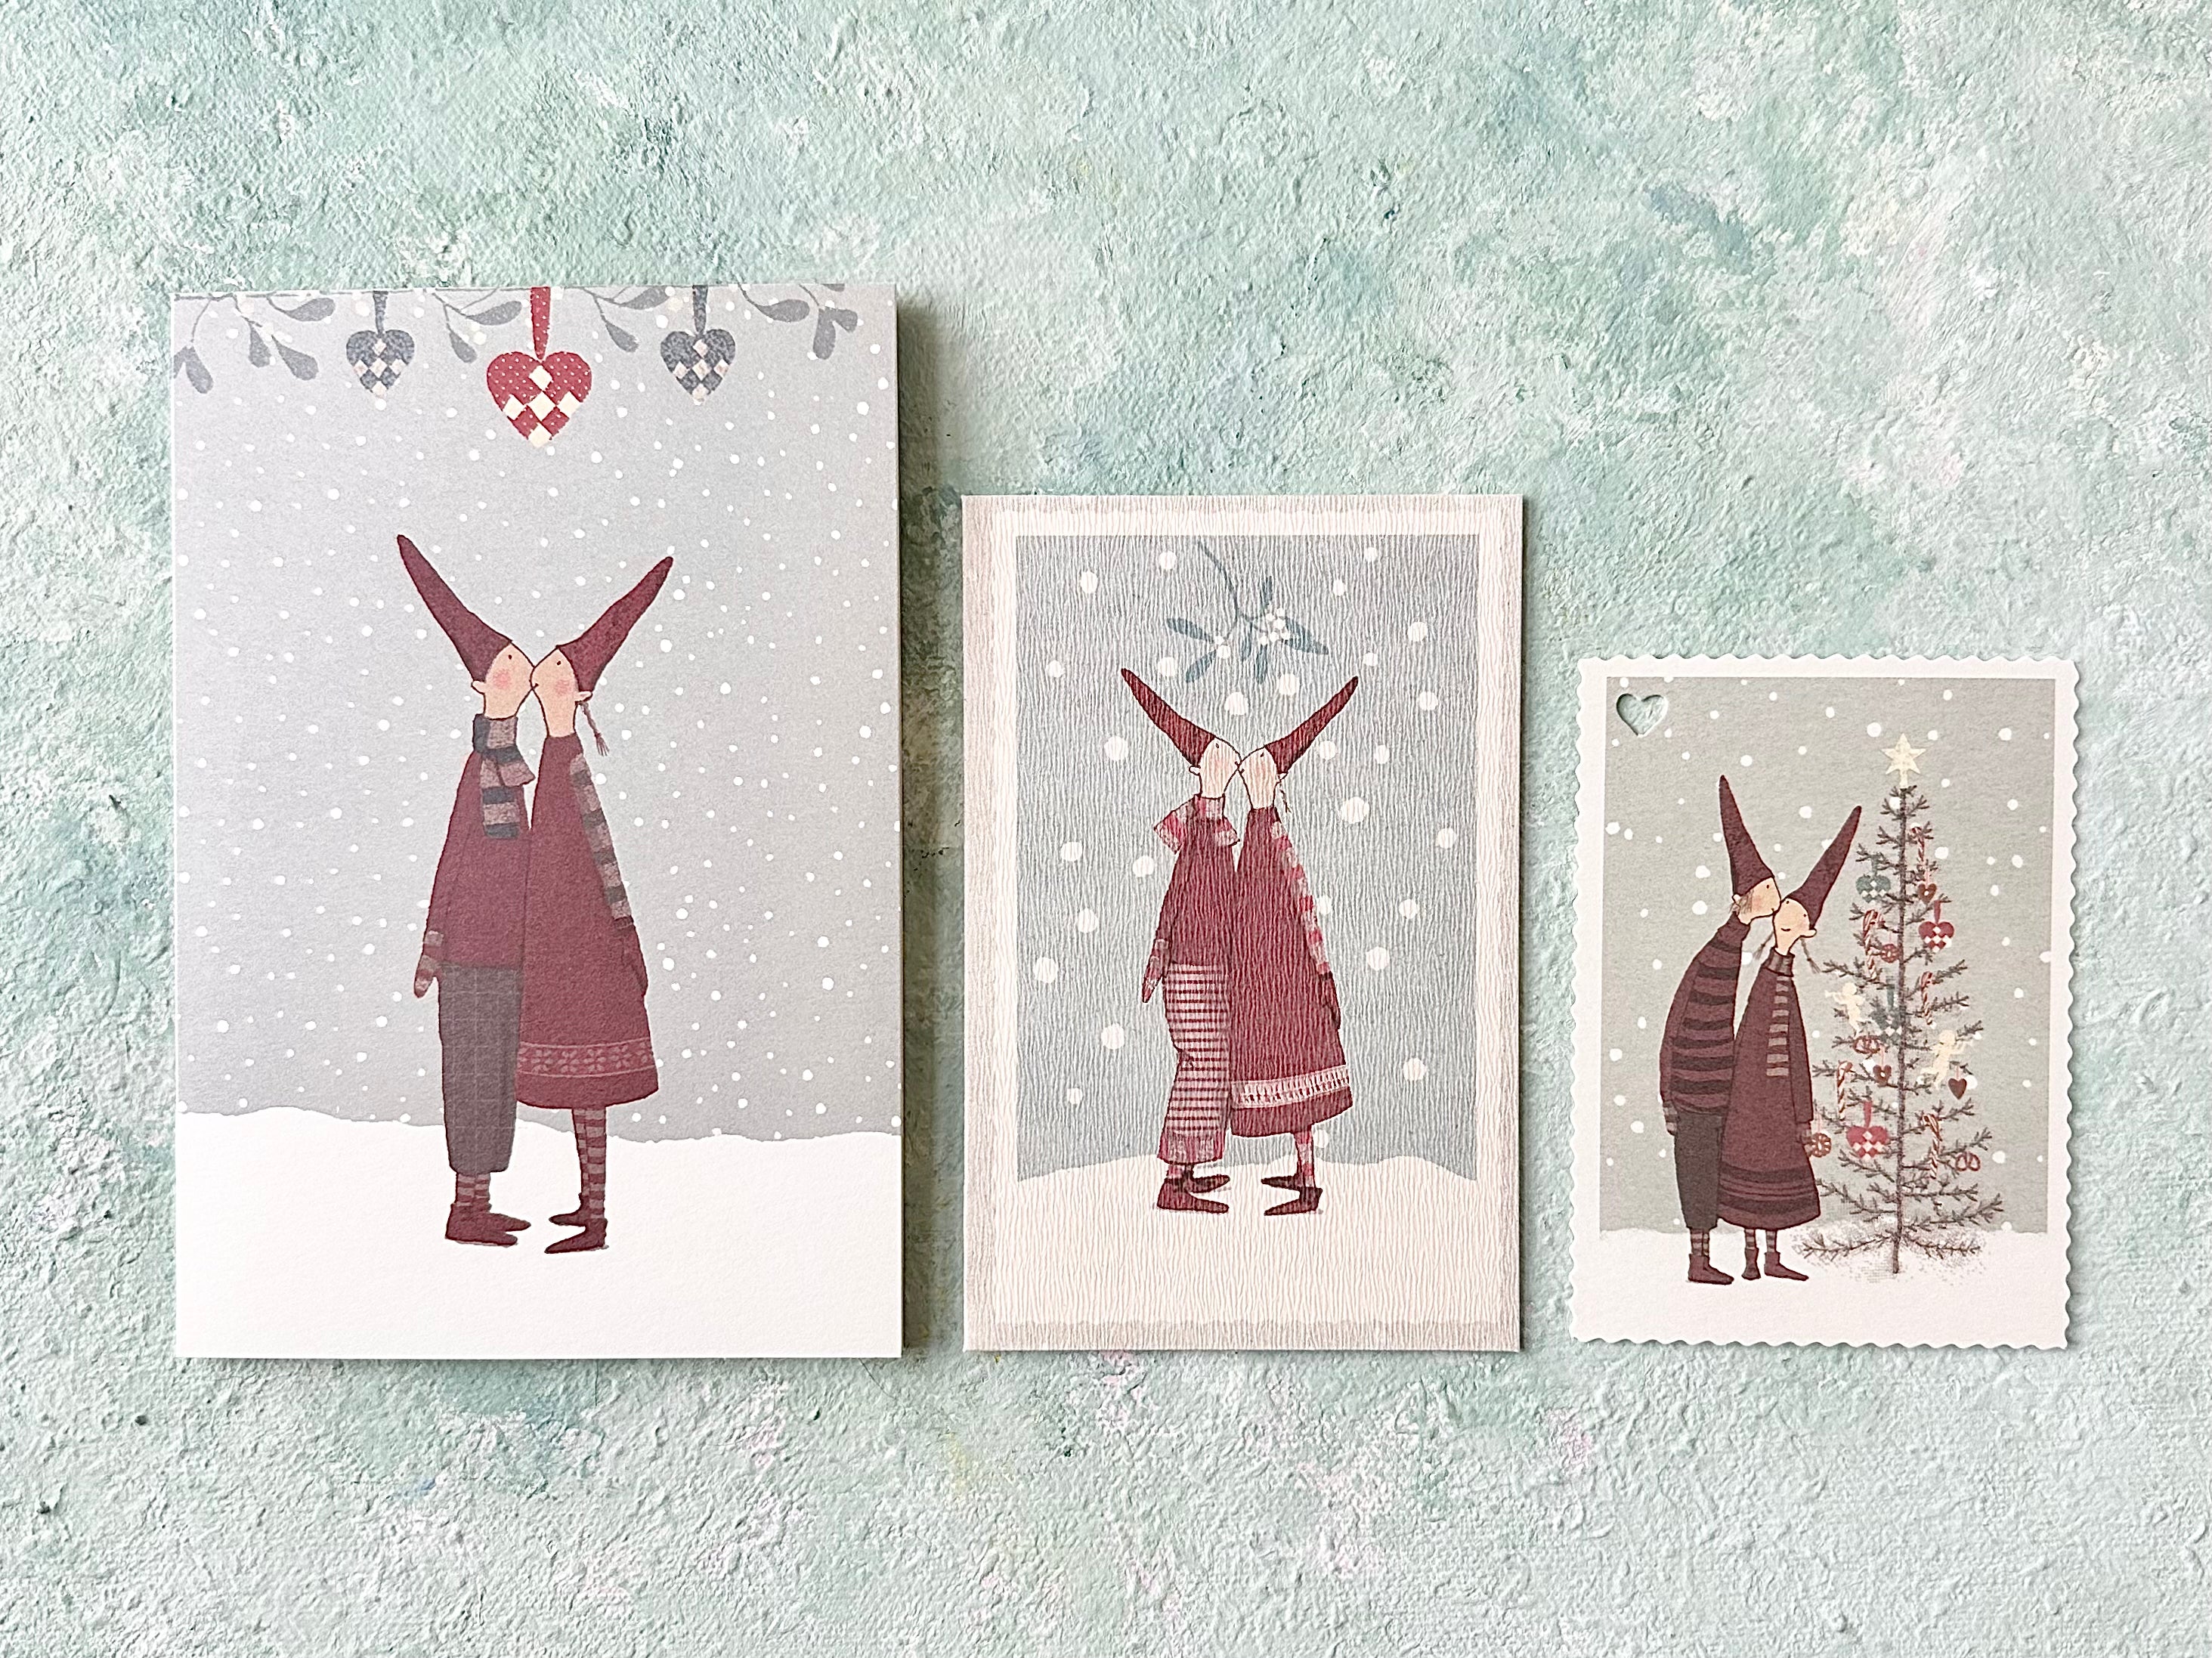 Mini Christmas Card “Heart” - 2010